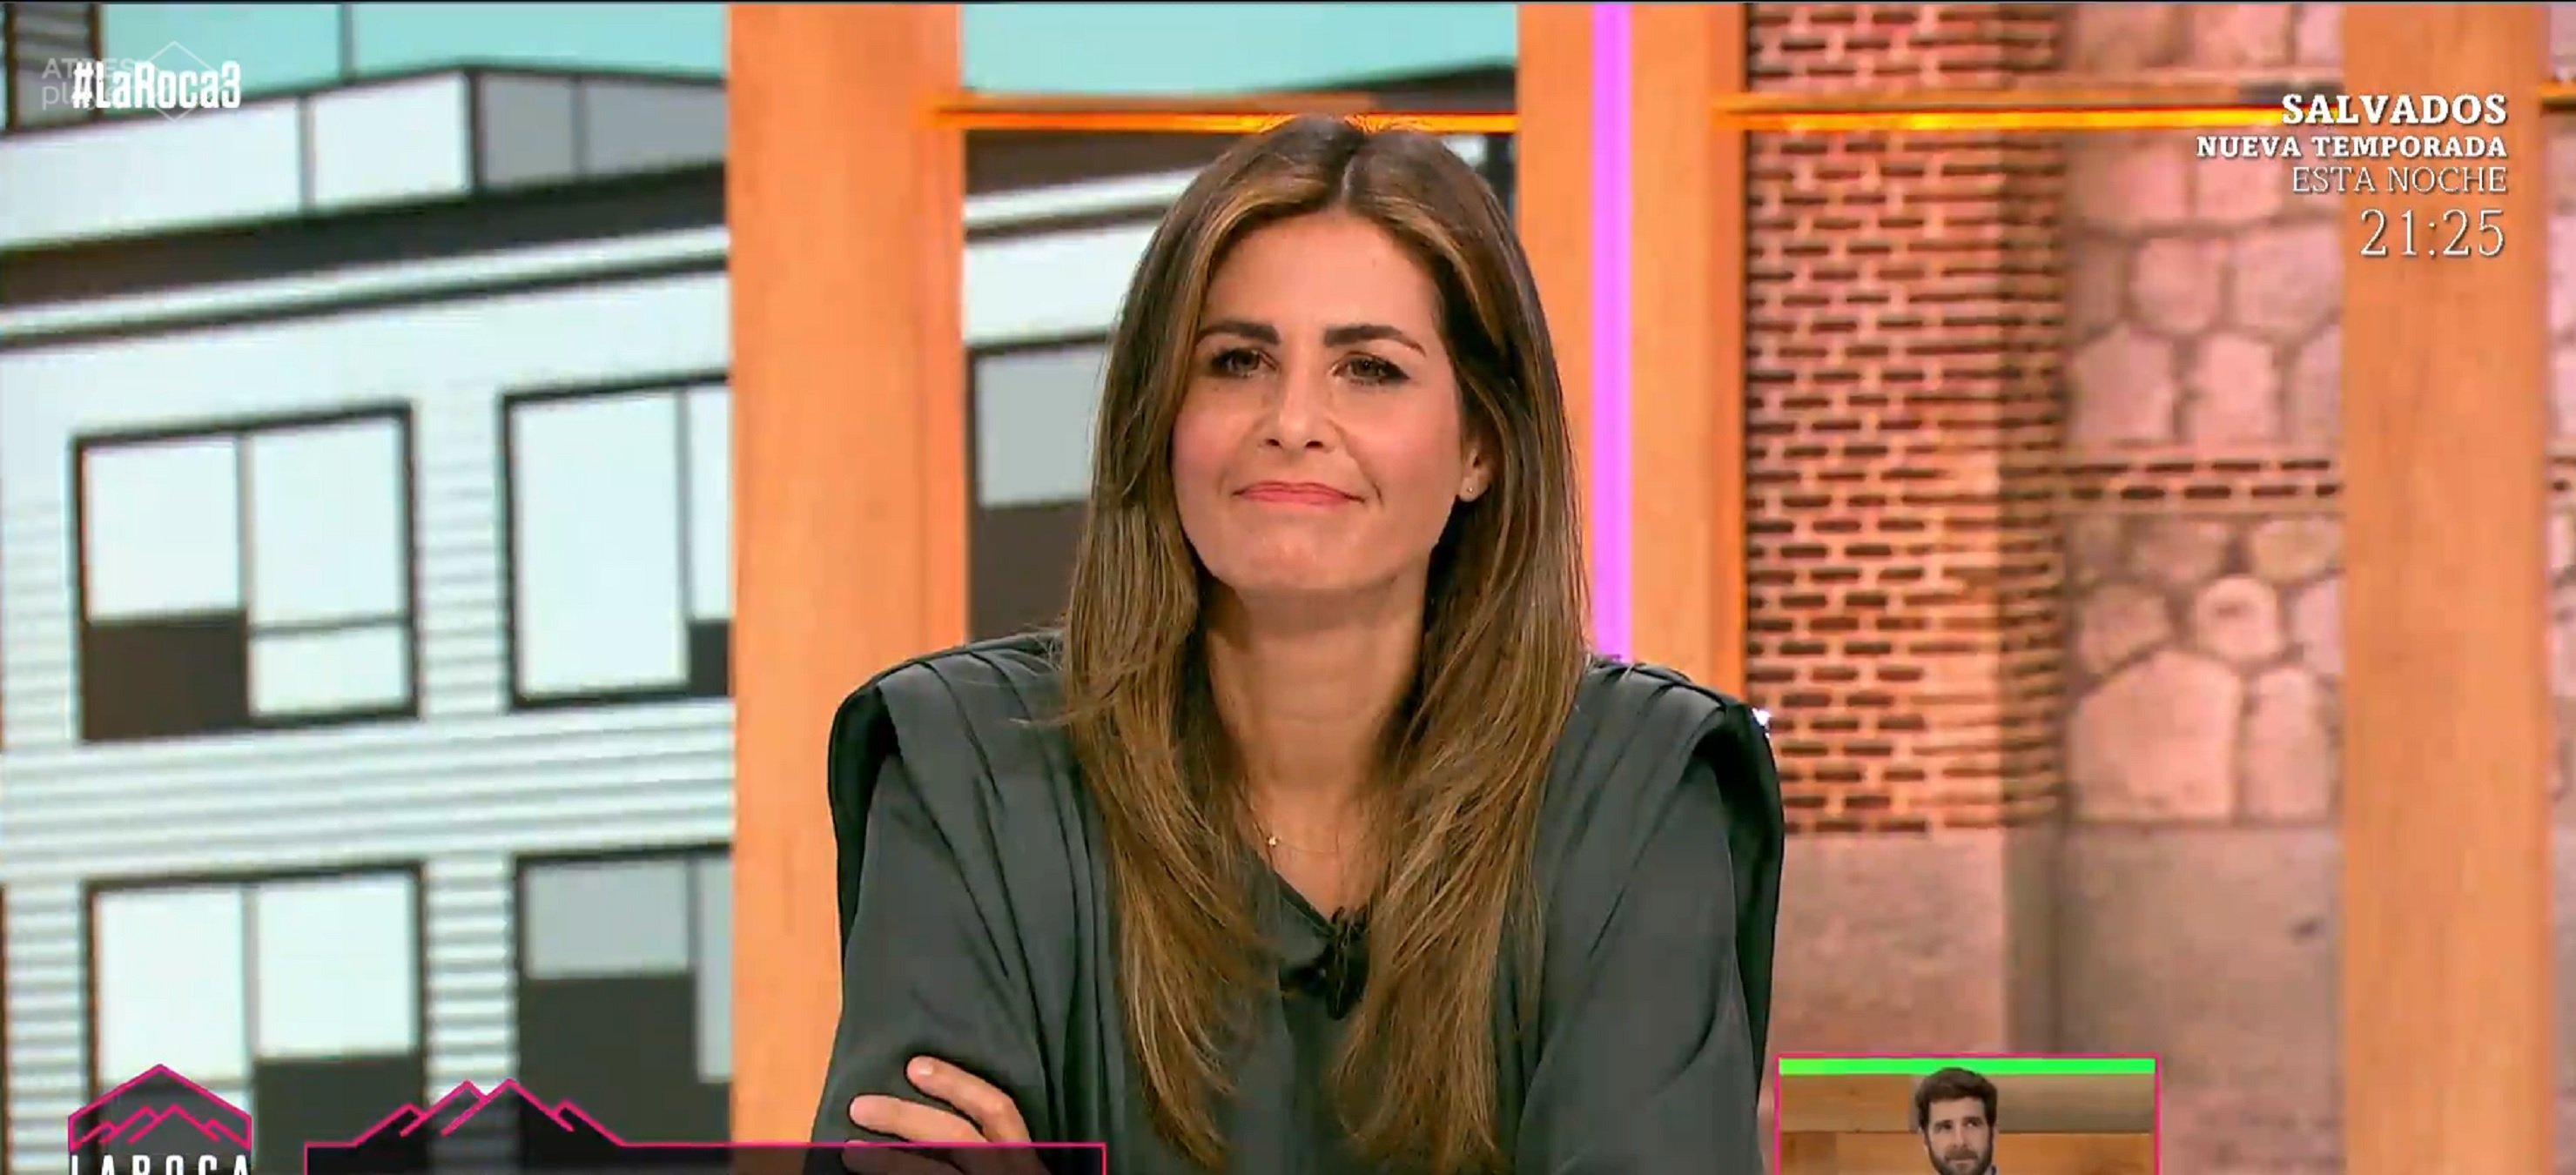 Nuria Roca hunde la audiencia y teme que la echen como en Telecinco y TV3